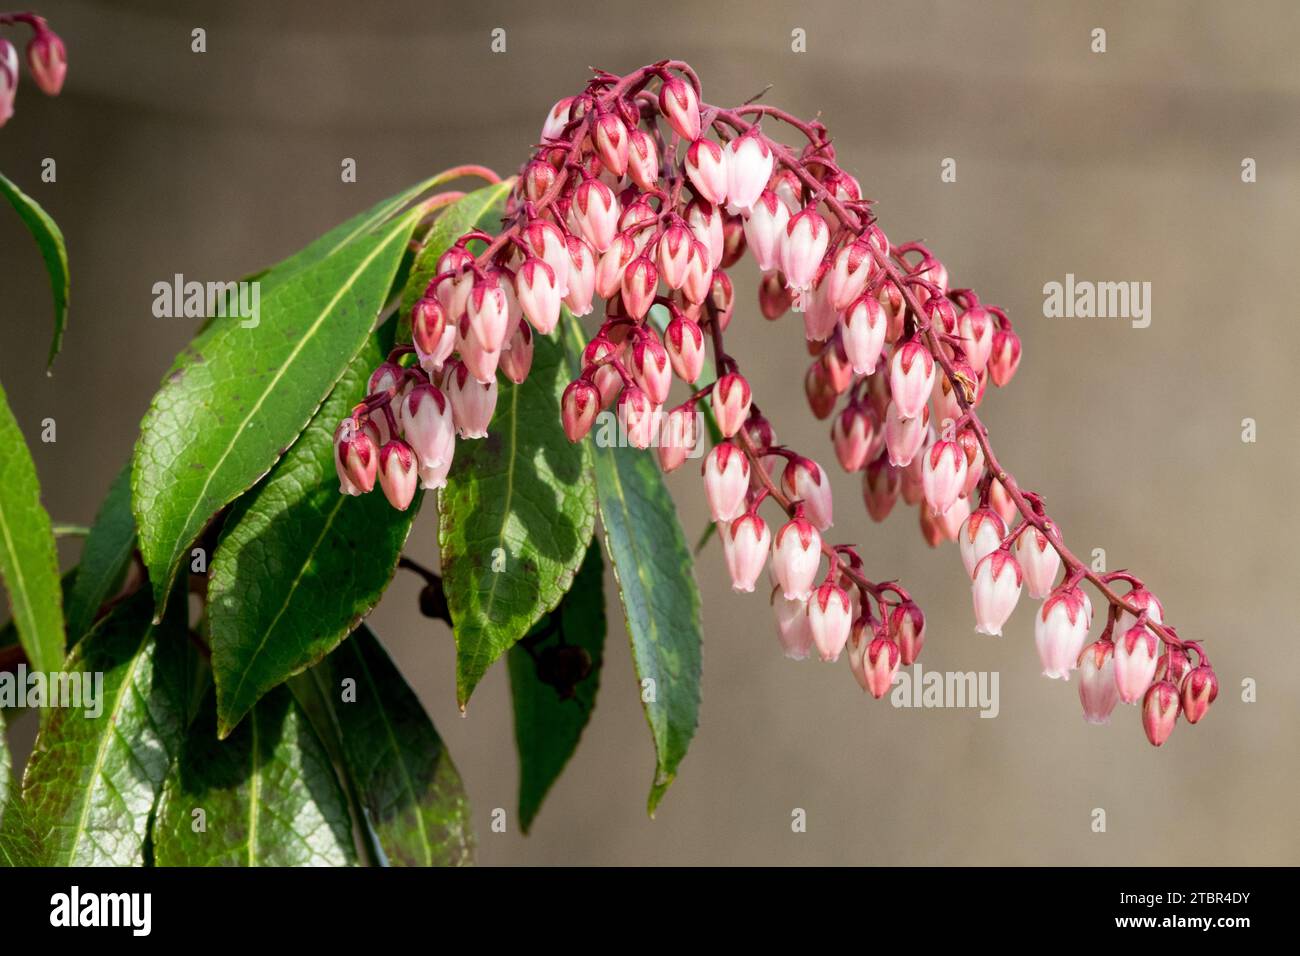 Arbusto fiorito a fine febbraio, pianta da fiore invernale giapponese andromeda, arbusto giglio della valle, Pieris japonica giapponese "Dorothy Wyckoff" rosa Foto Stock